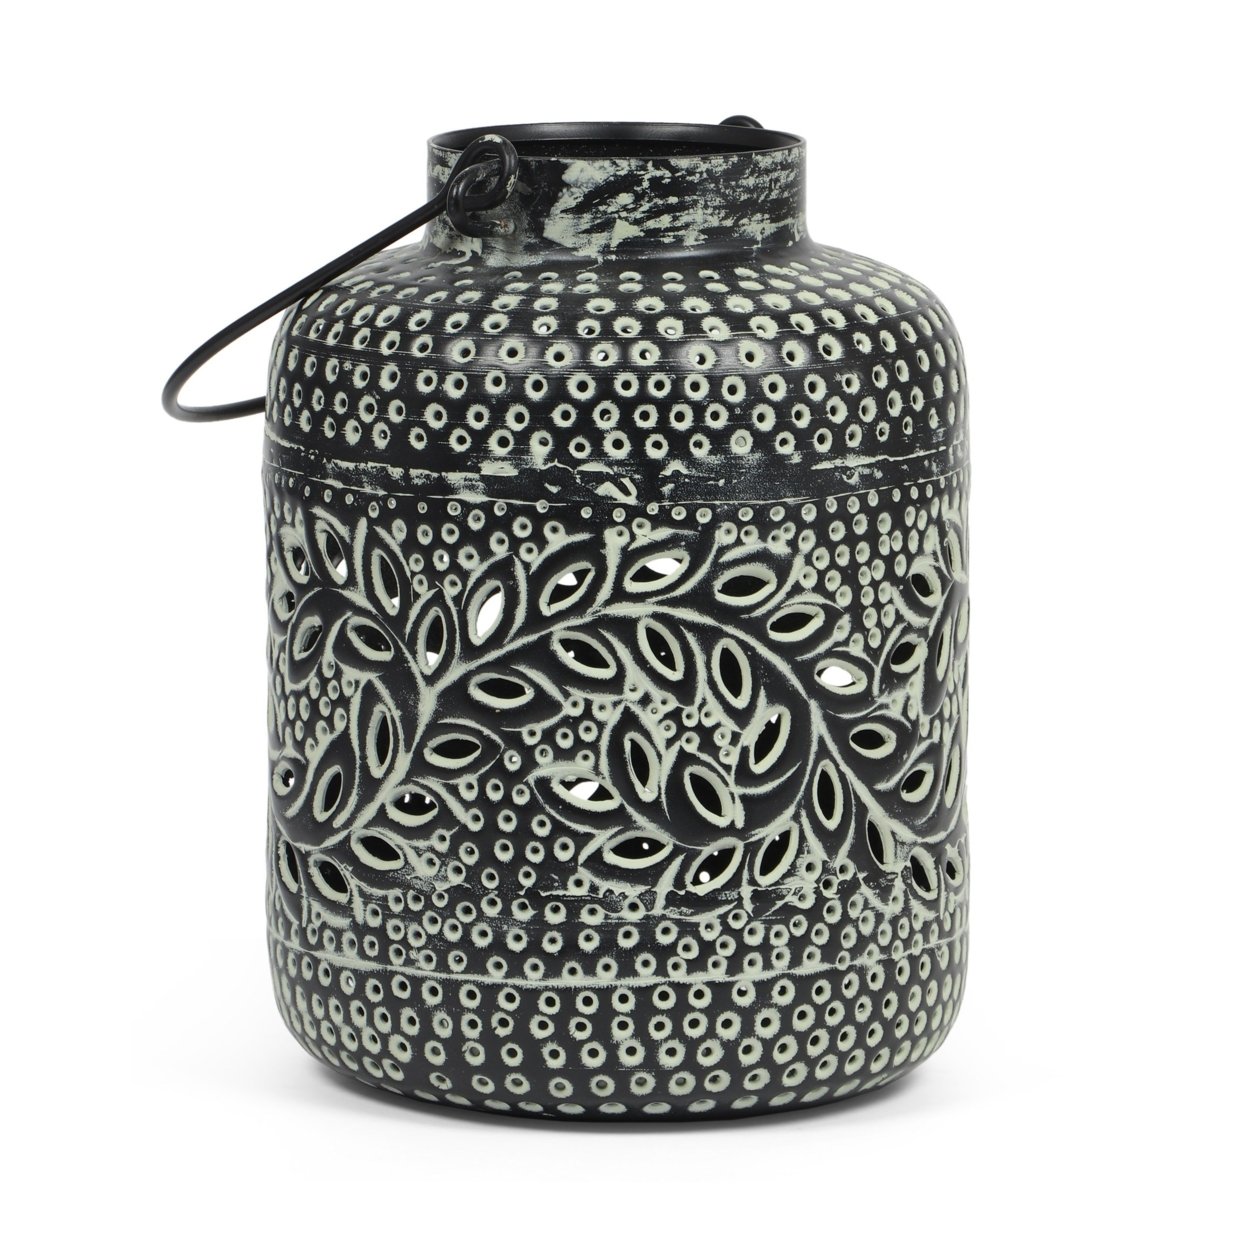 Reitz Boho Handcrafted Decorative Lantern - Large